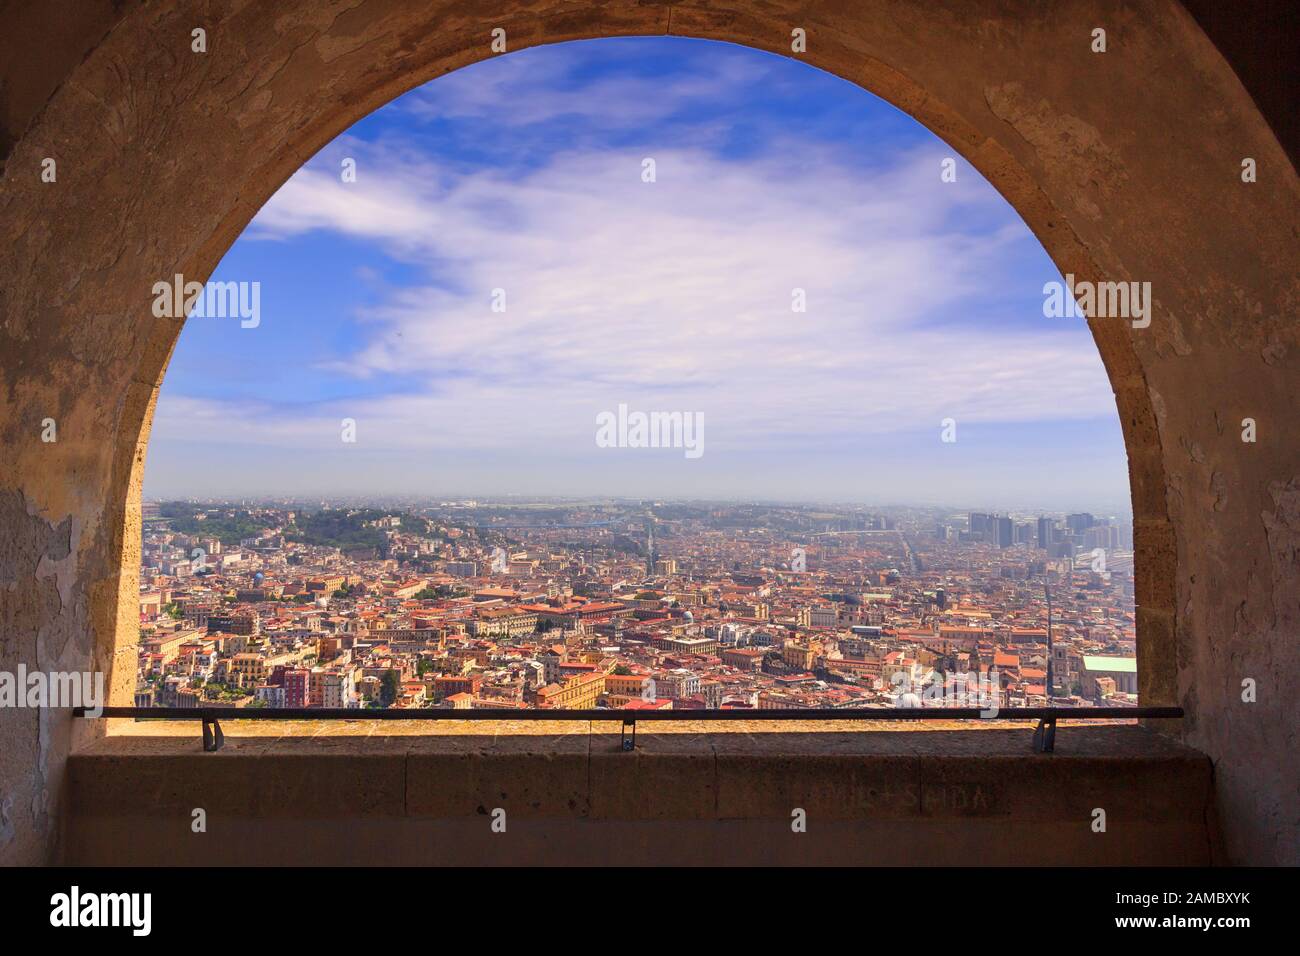 Vista panorámica de la ciudad de Nápoles a través del arco de la fortaleza medieval Castel Sant'Elmo. Horizonte con el casco antiguo histórico, la calle Spaccanapoli. Foto de stock